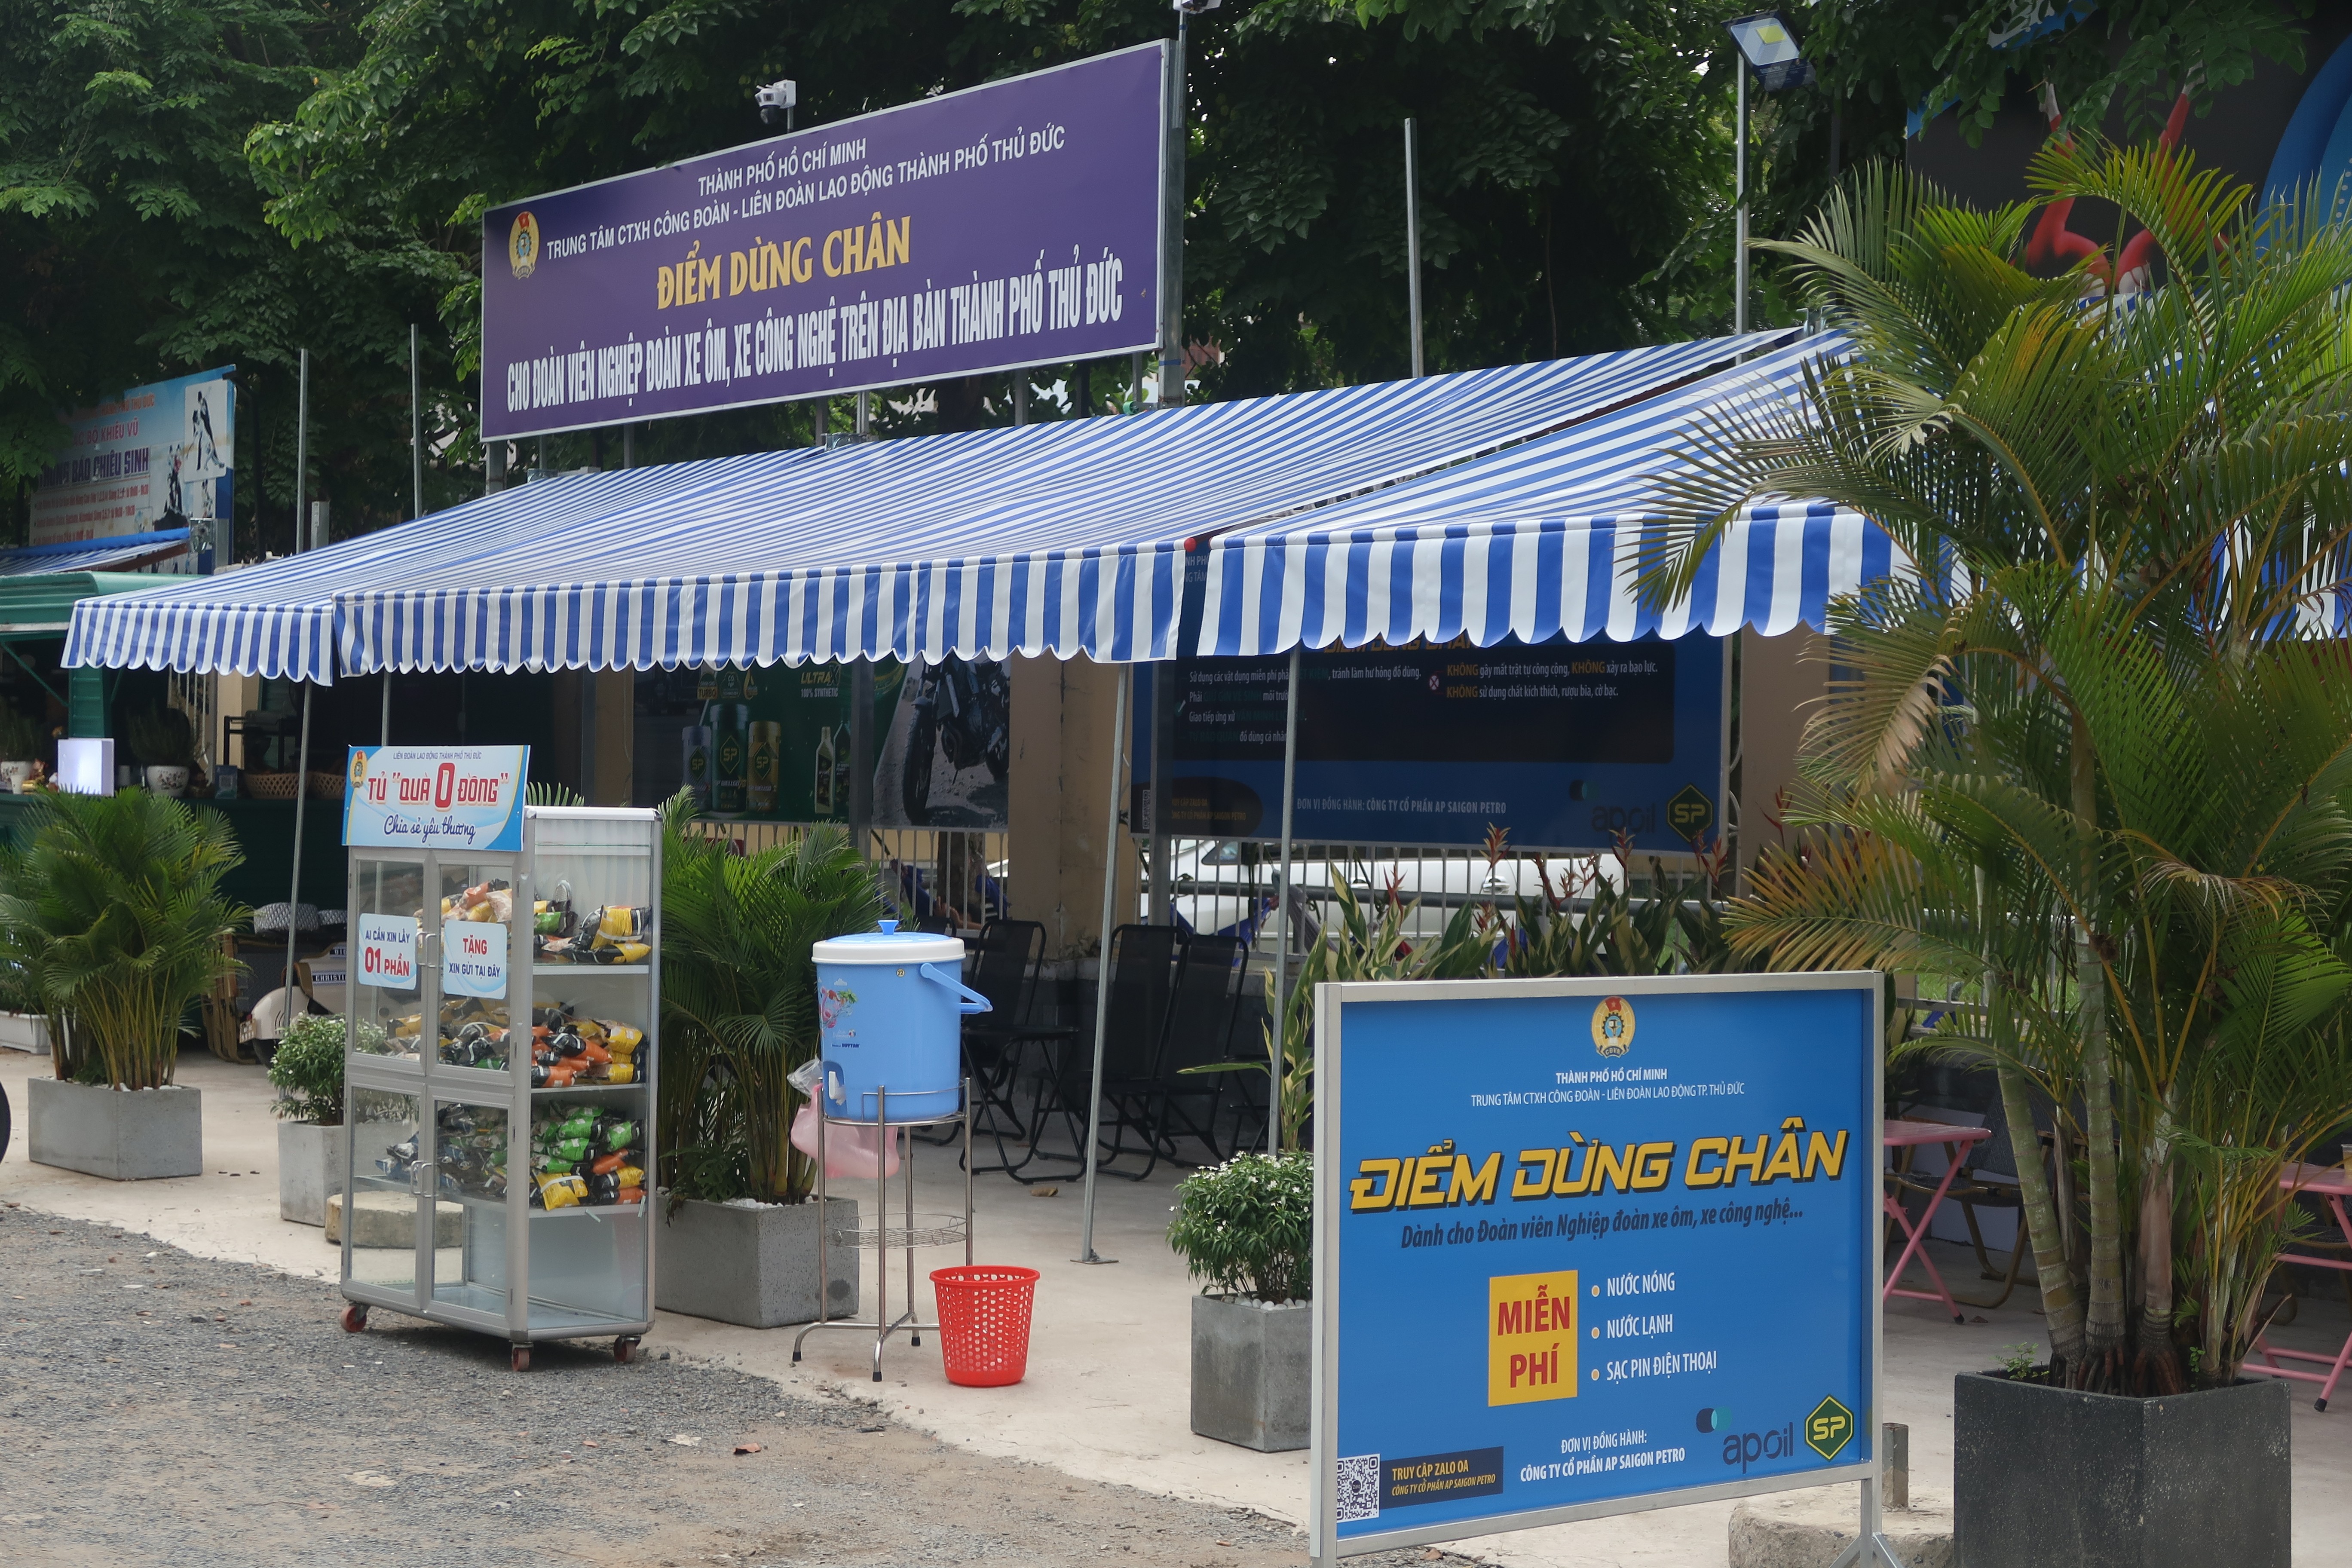 Trạm dừng chân miễn phí: “Cứu cánh” cho các tài xế xe ôm tại TP Thủ Đức